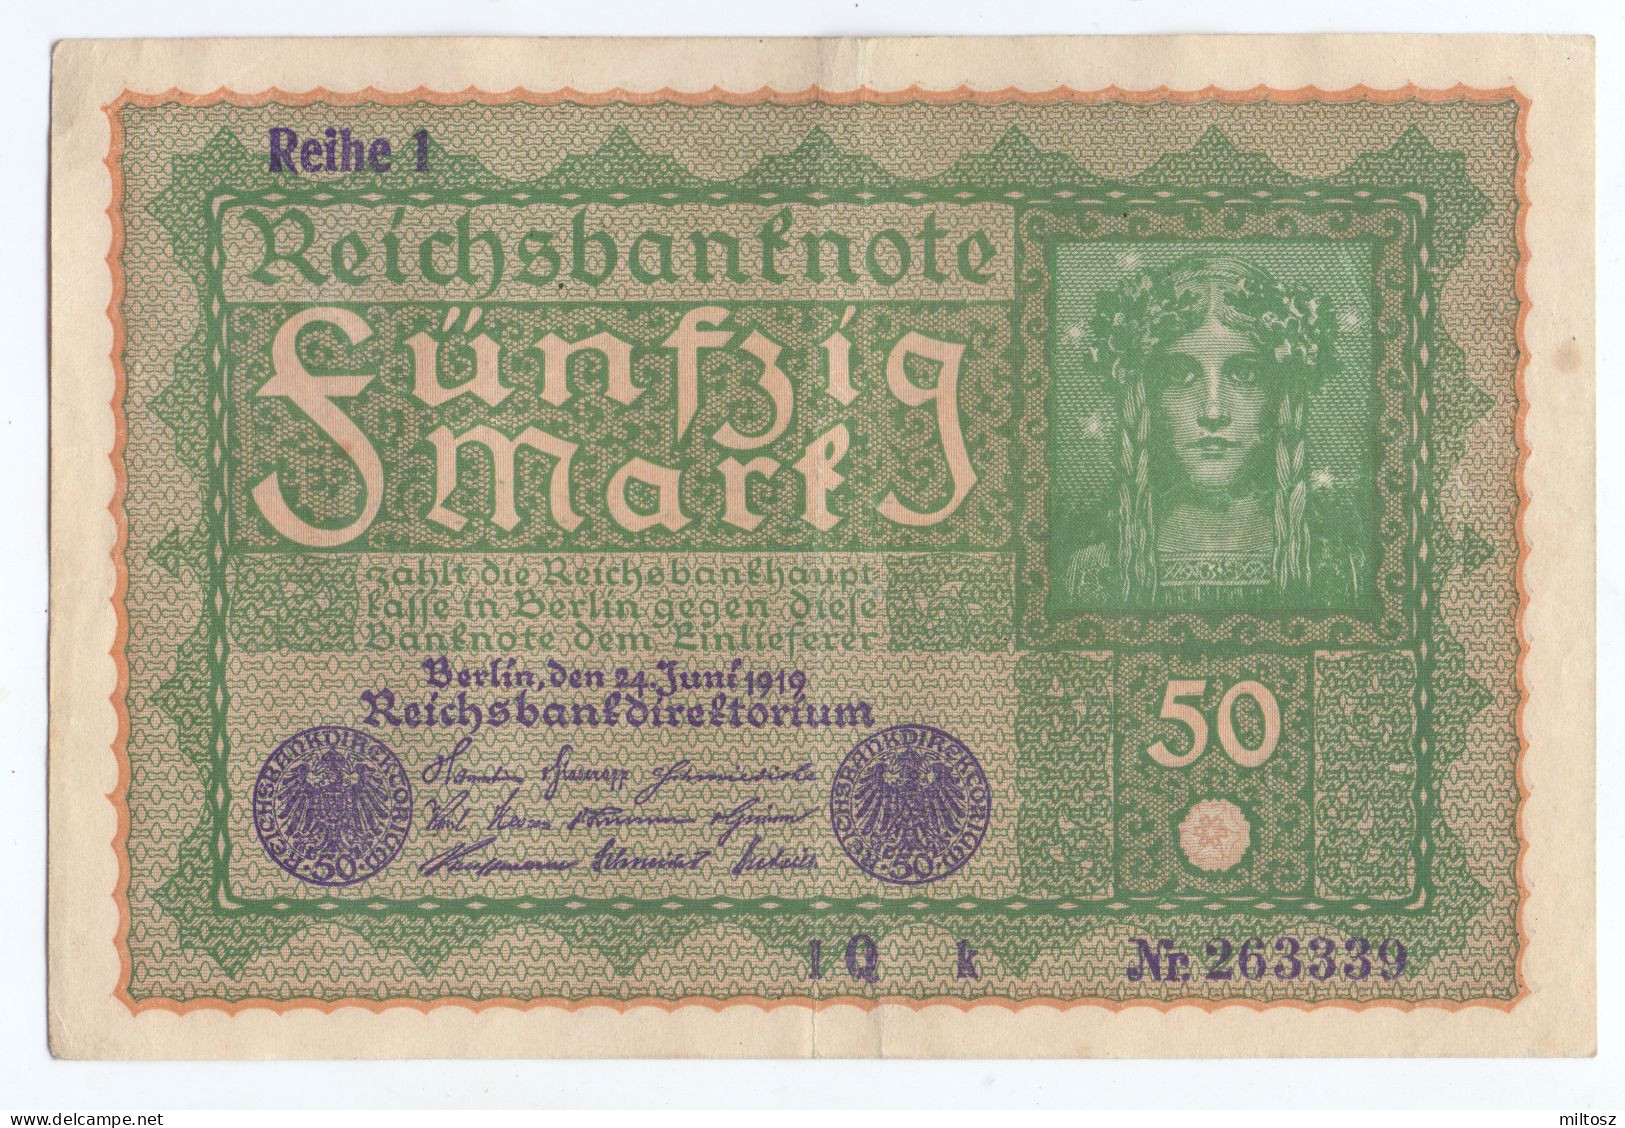 Germany 50 Mark 1919 - Reichsschuldenverwaltung